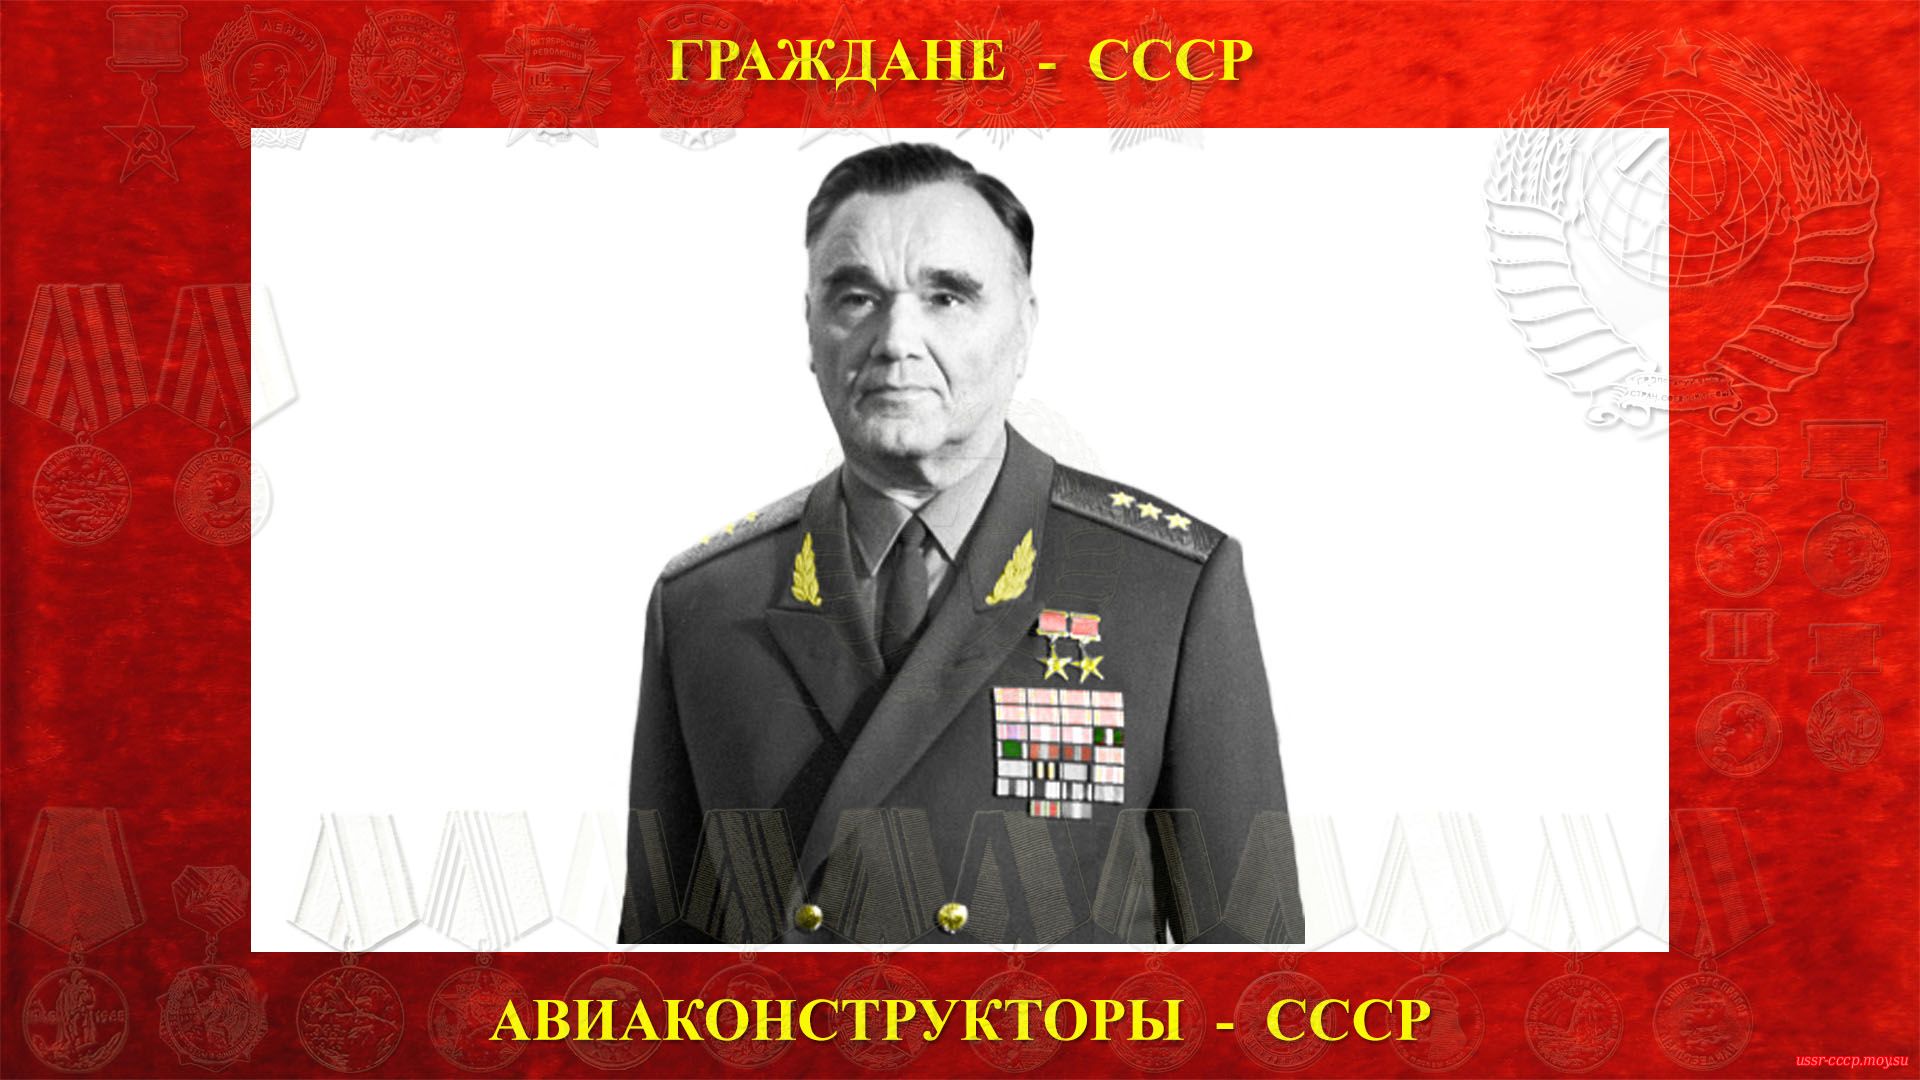 Яковлев Александр Сергеевич — Советский авиаконструктор (1971 год).